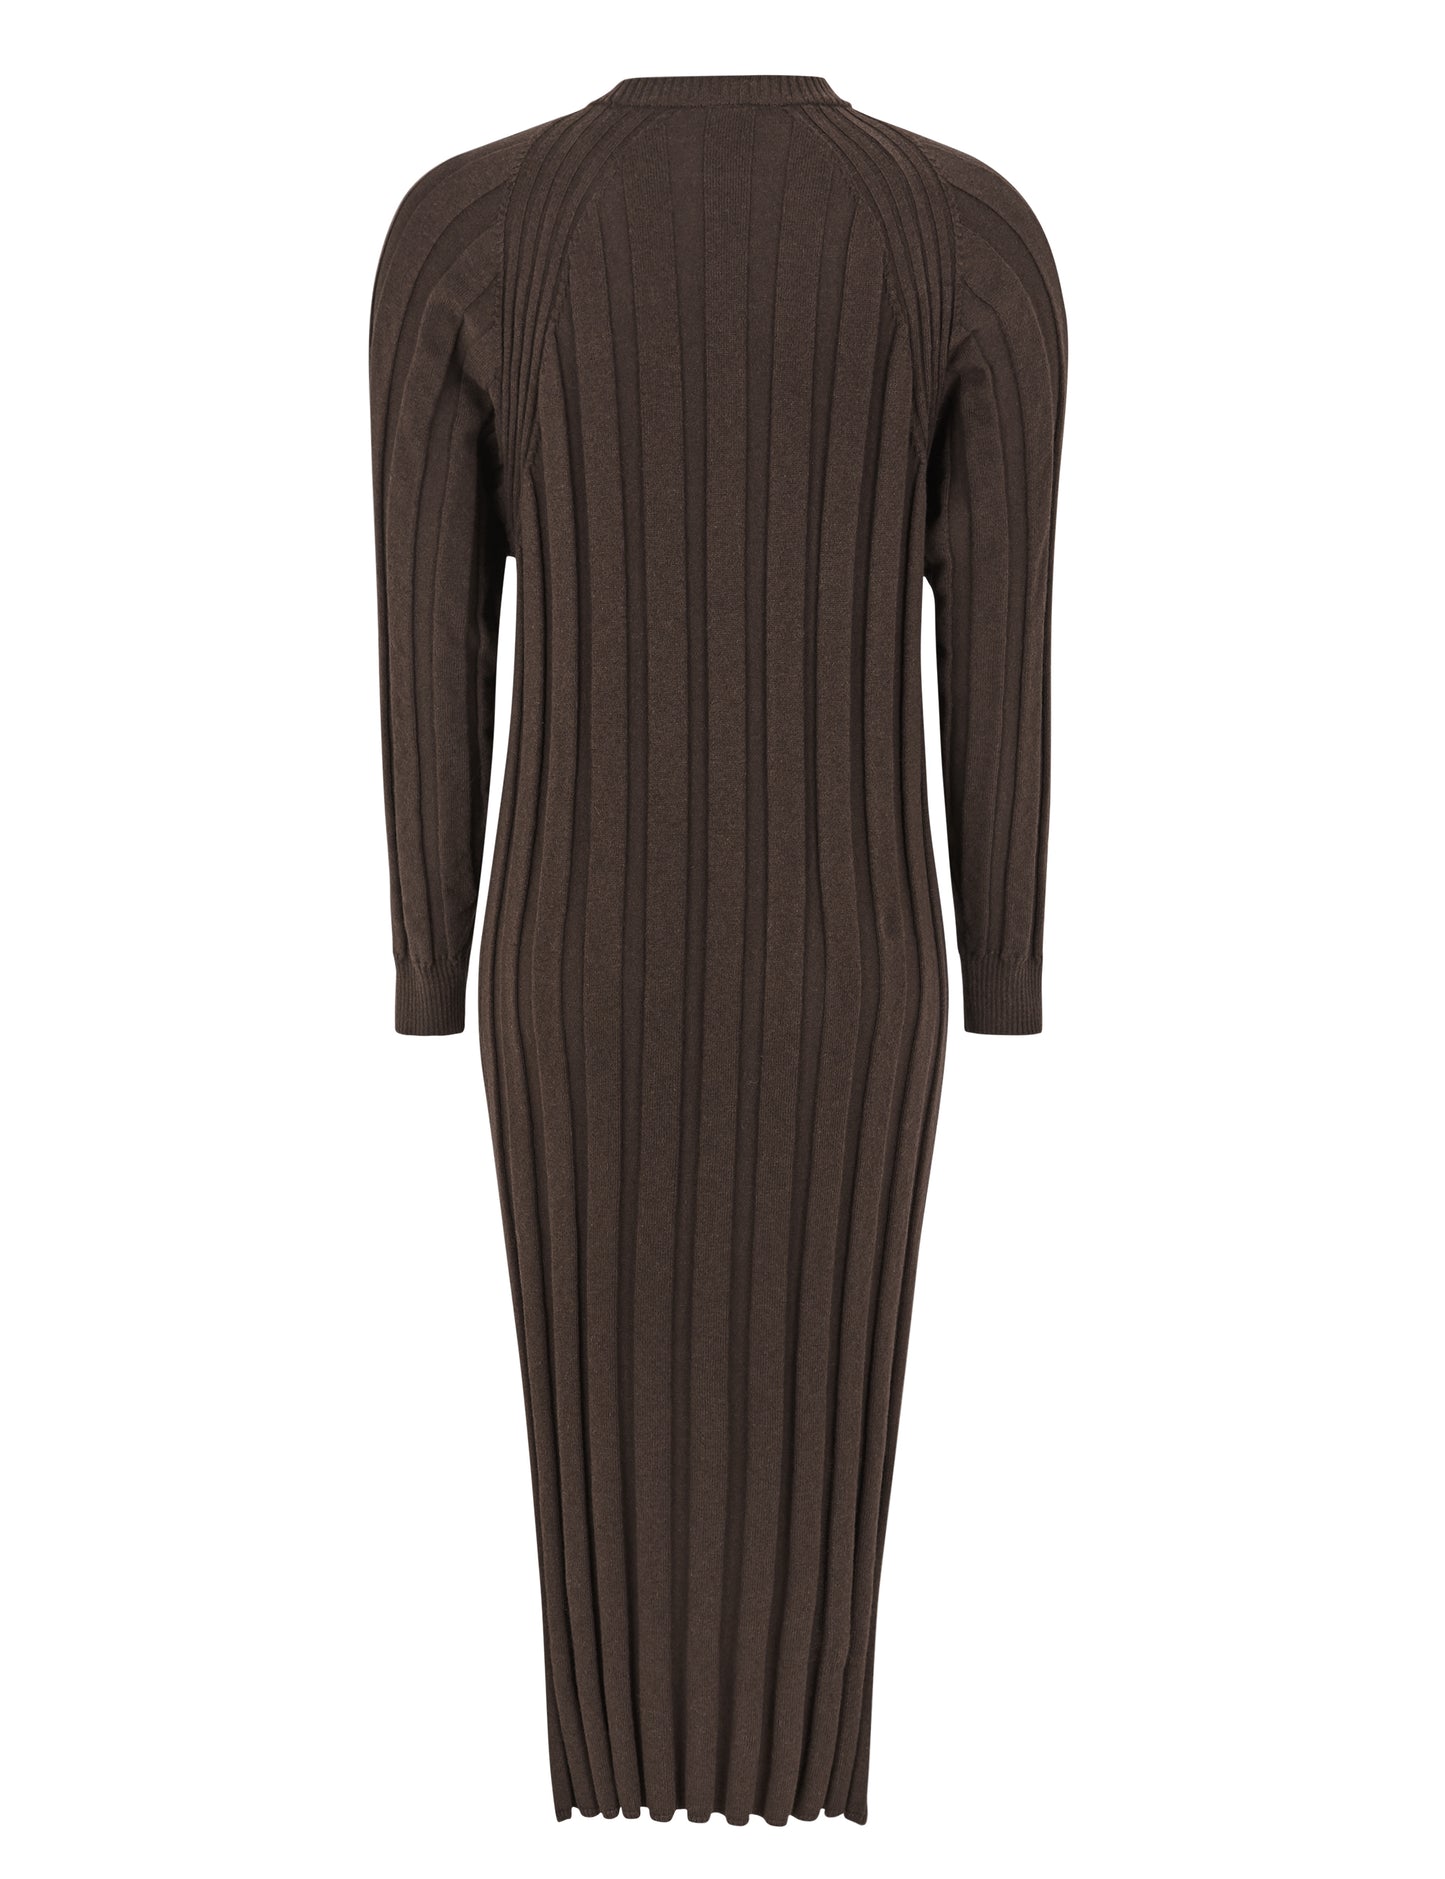 ESMÉ - Pana Midi Dress Knit - SALE - 159,90€-50%= 79,90€